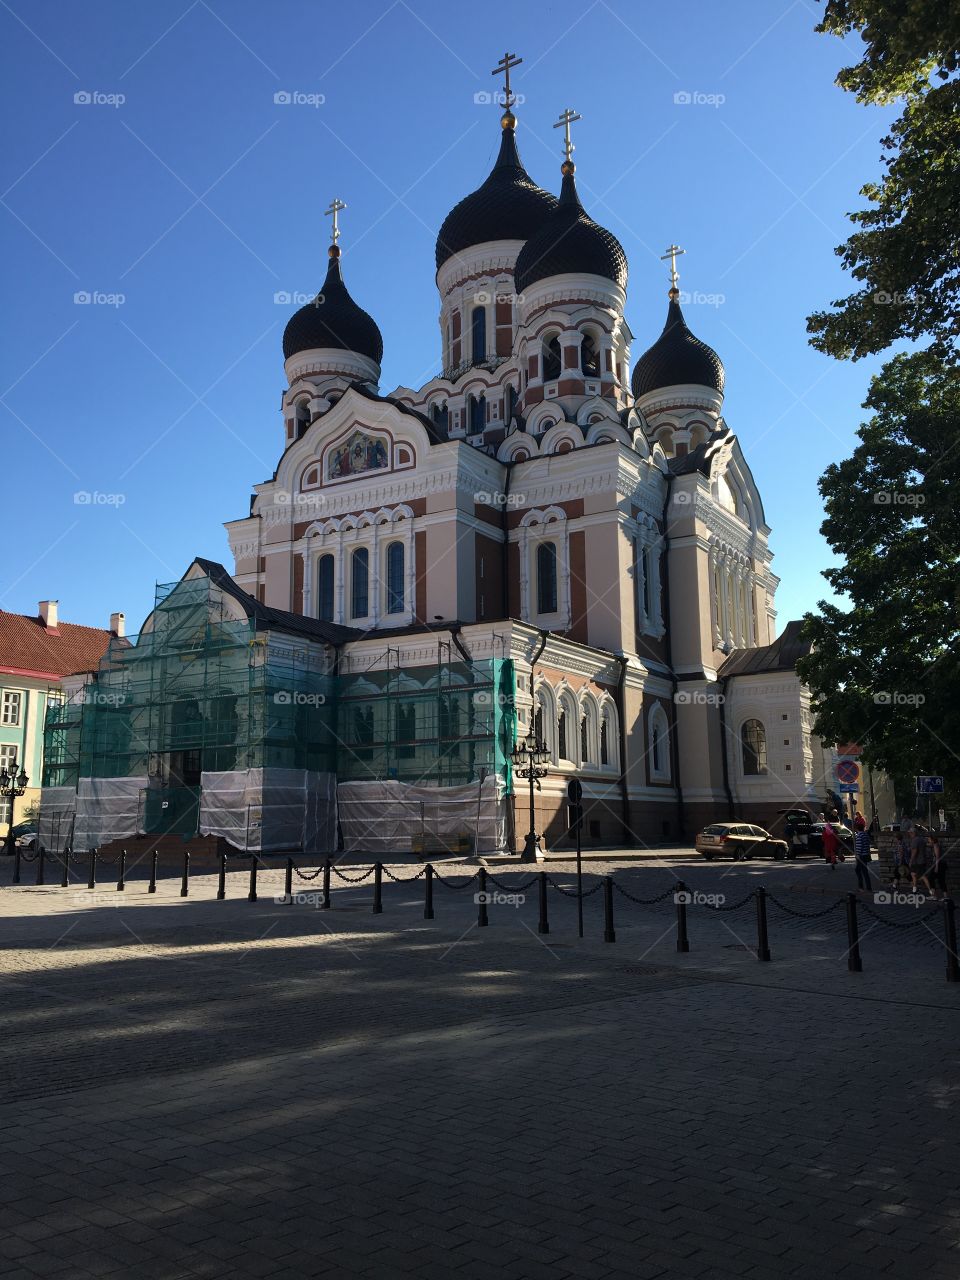 Tallinn Russian church 